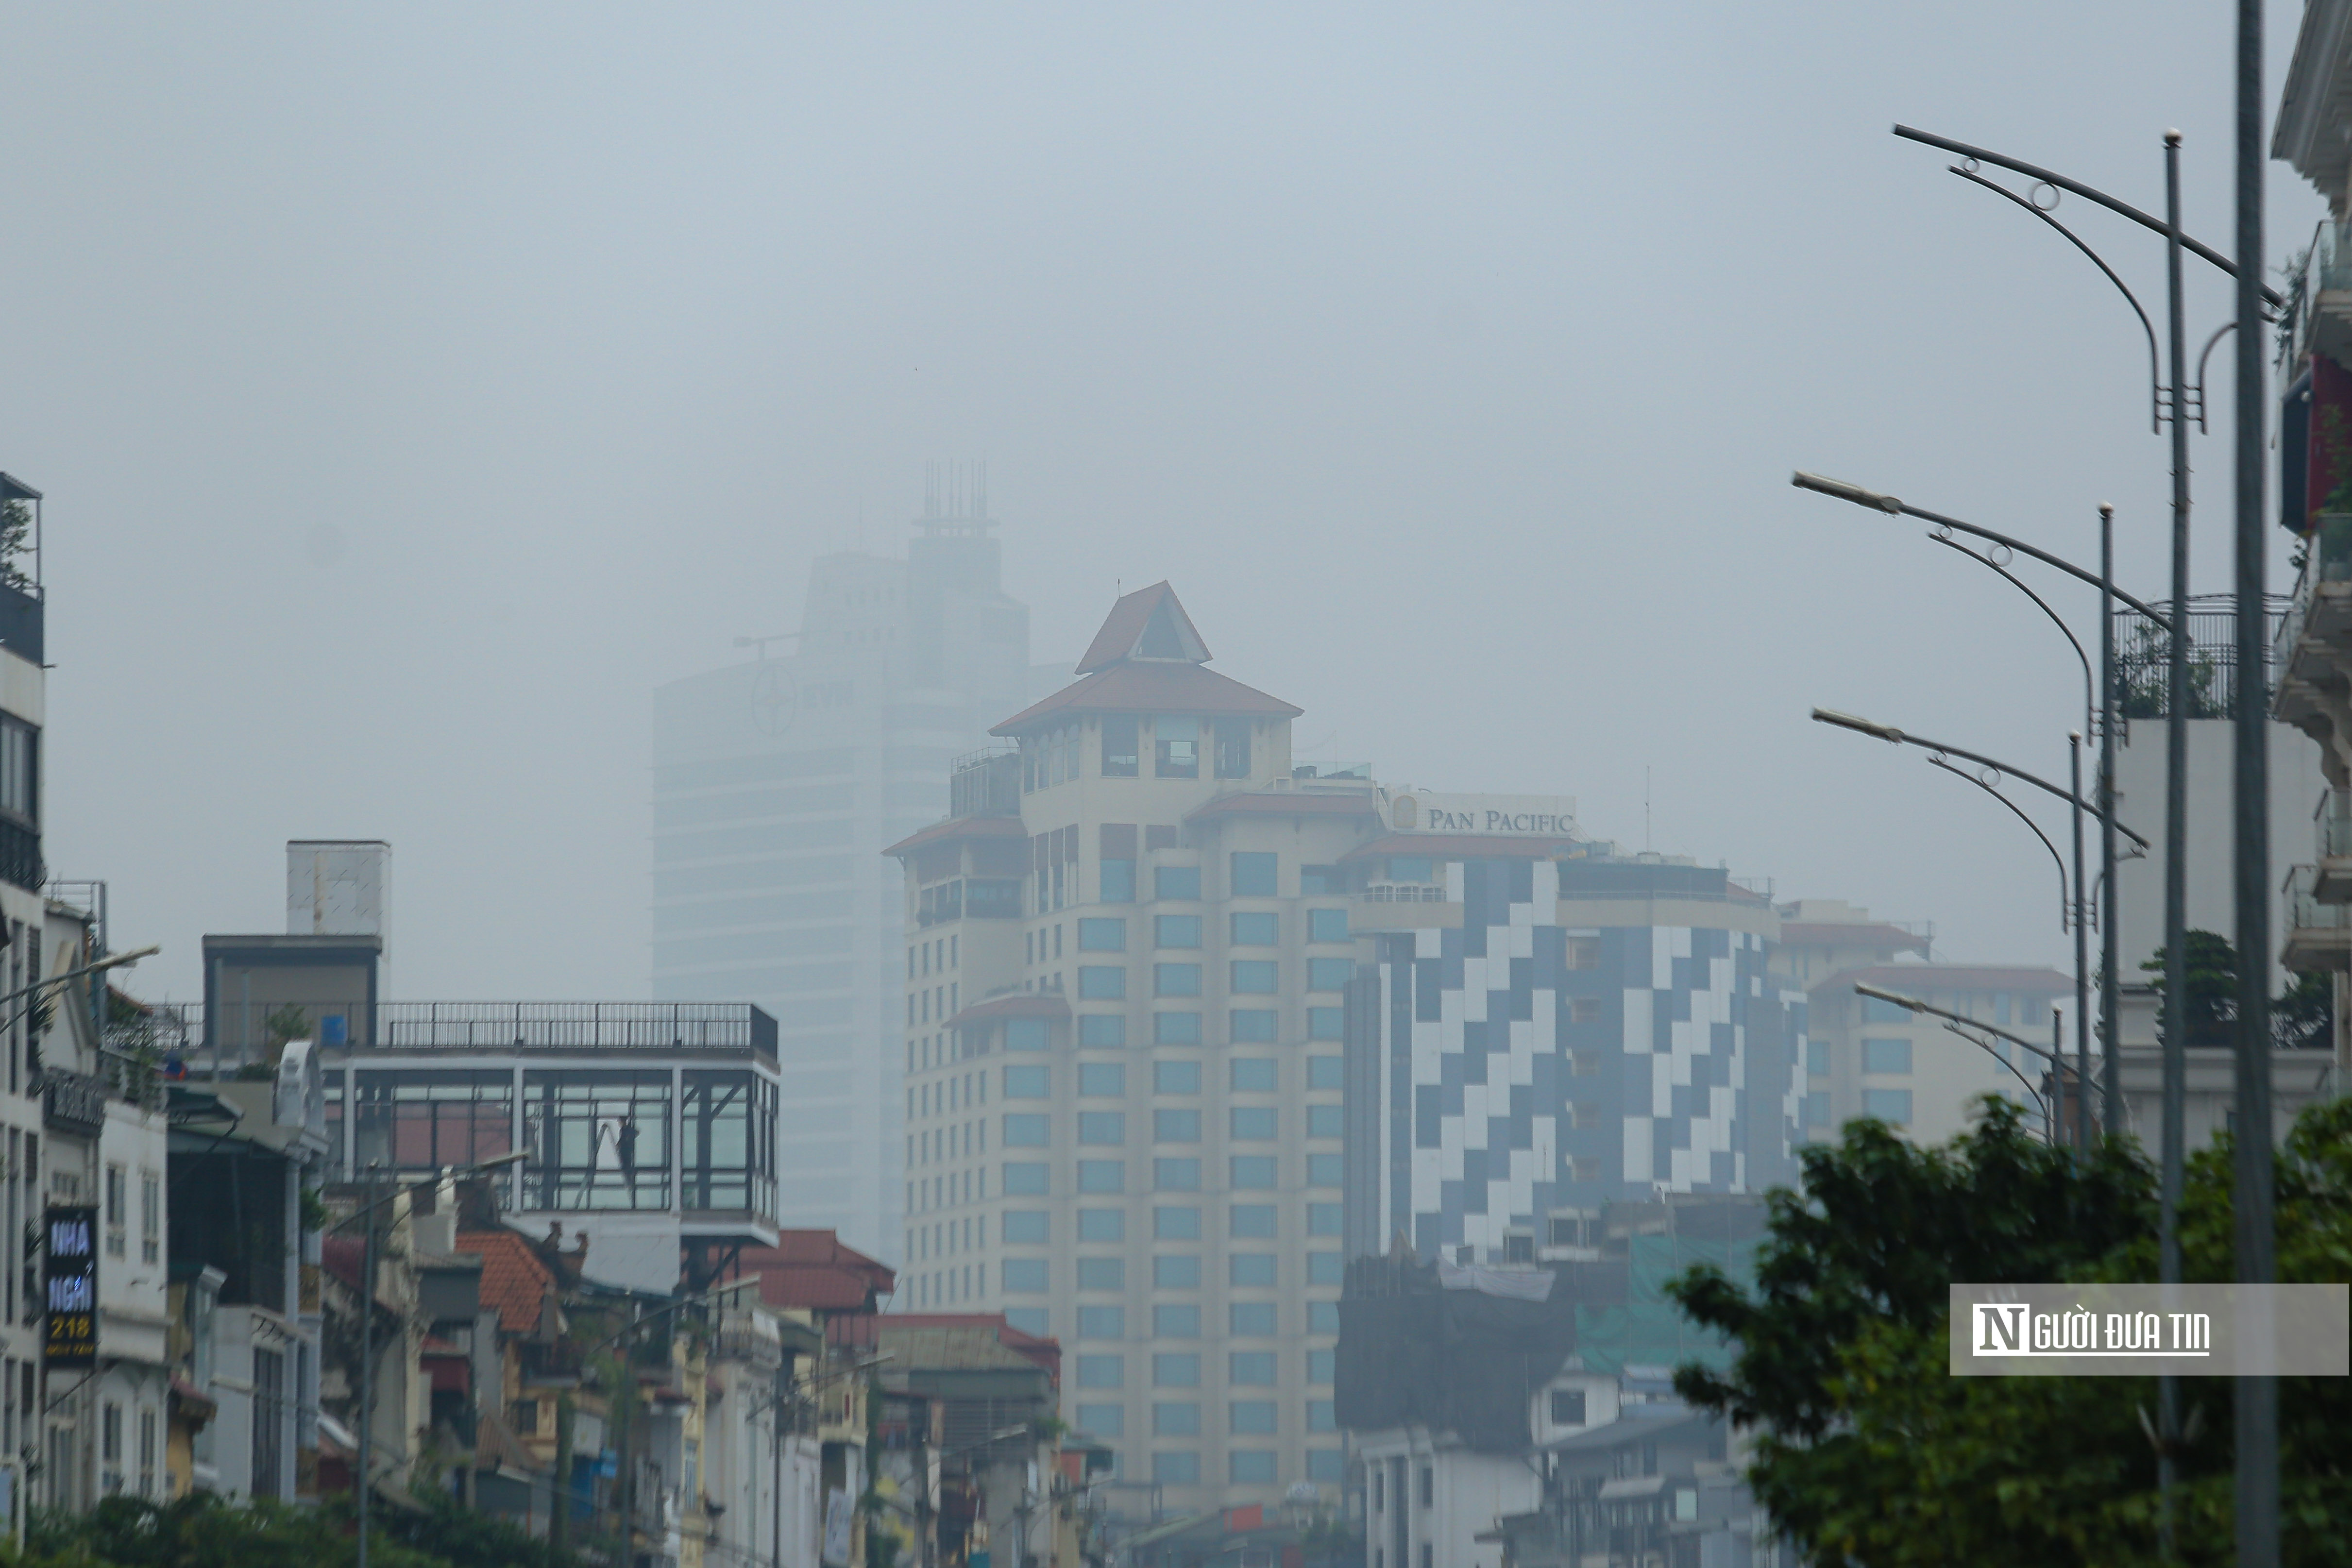 Môi trường - Thời tiết nồm ẩm, Hà Nội chìm trong sương mù (Hình 13).